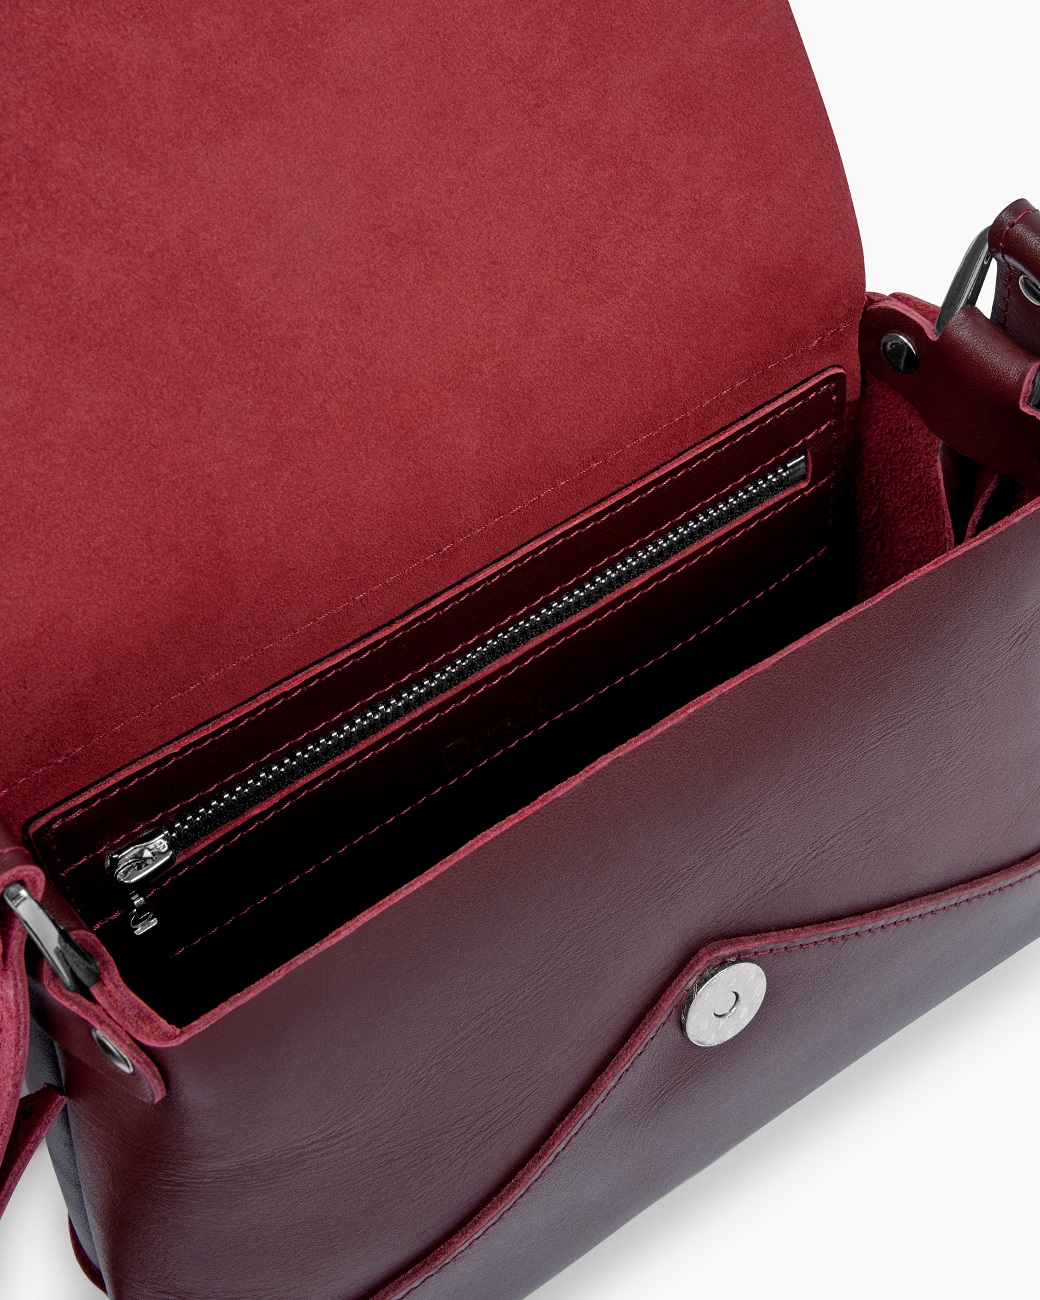 Женская сумка через плечо из натуральной кожи бордовая A003 burgundy